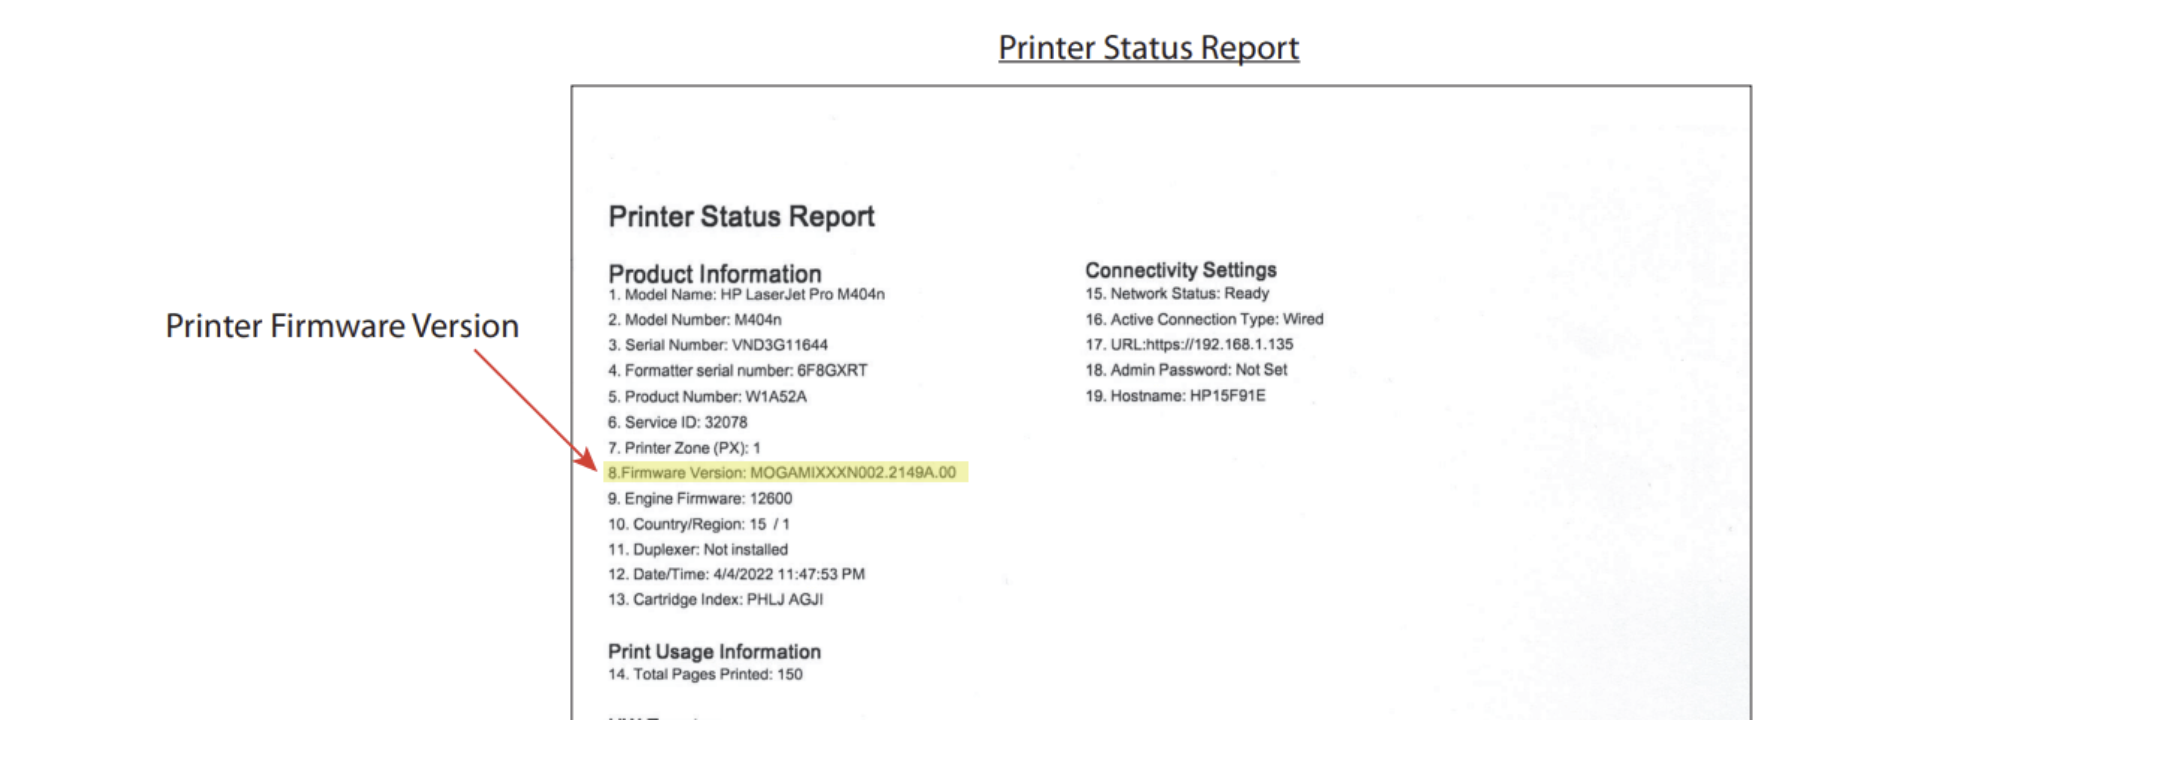 Printer Status Report